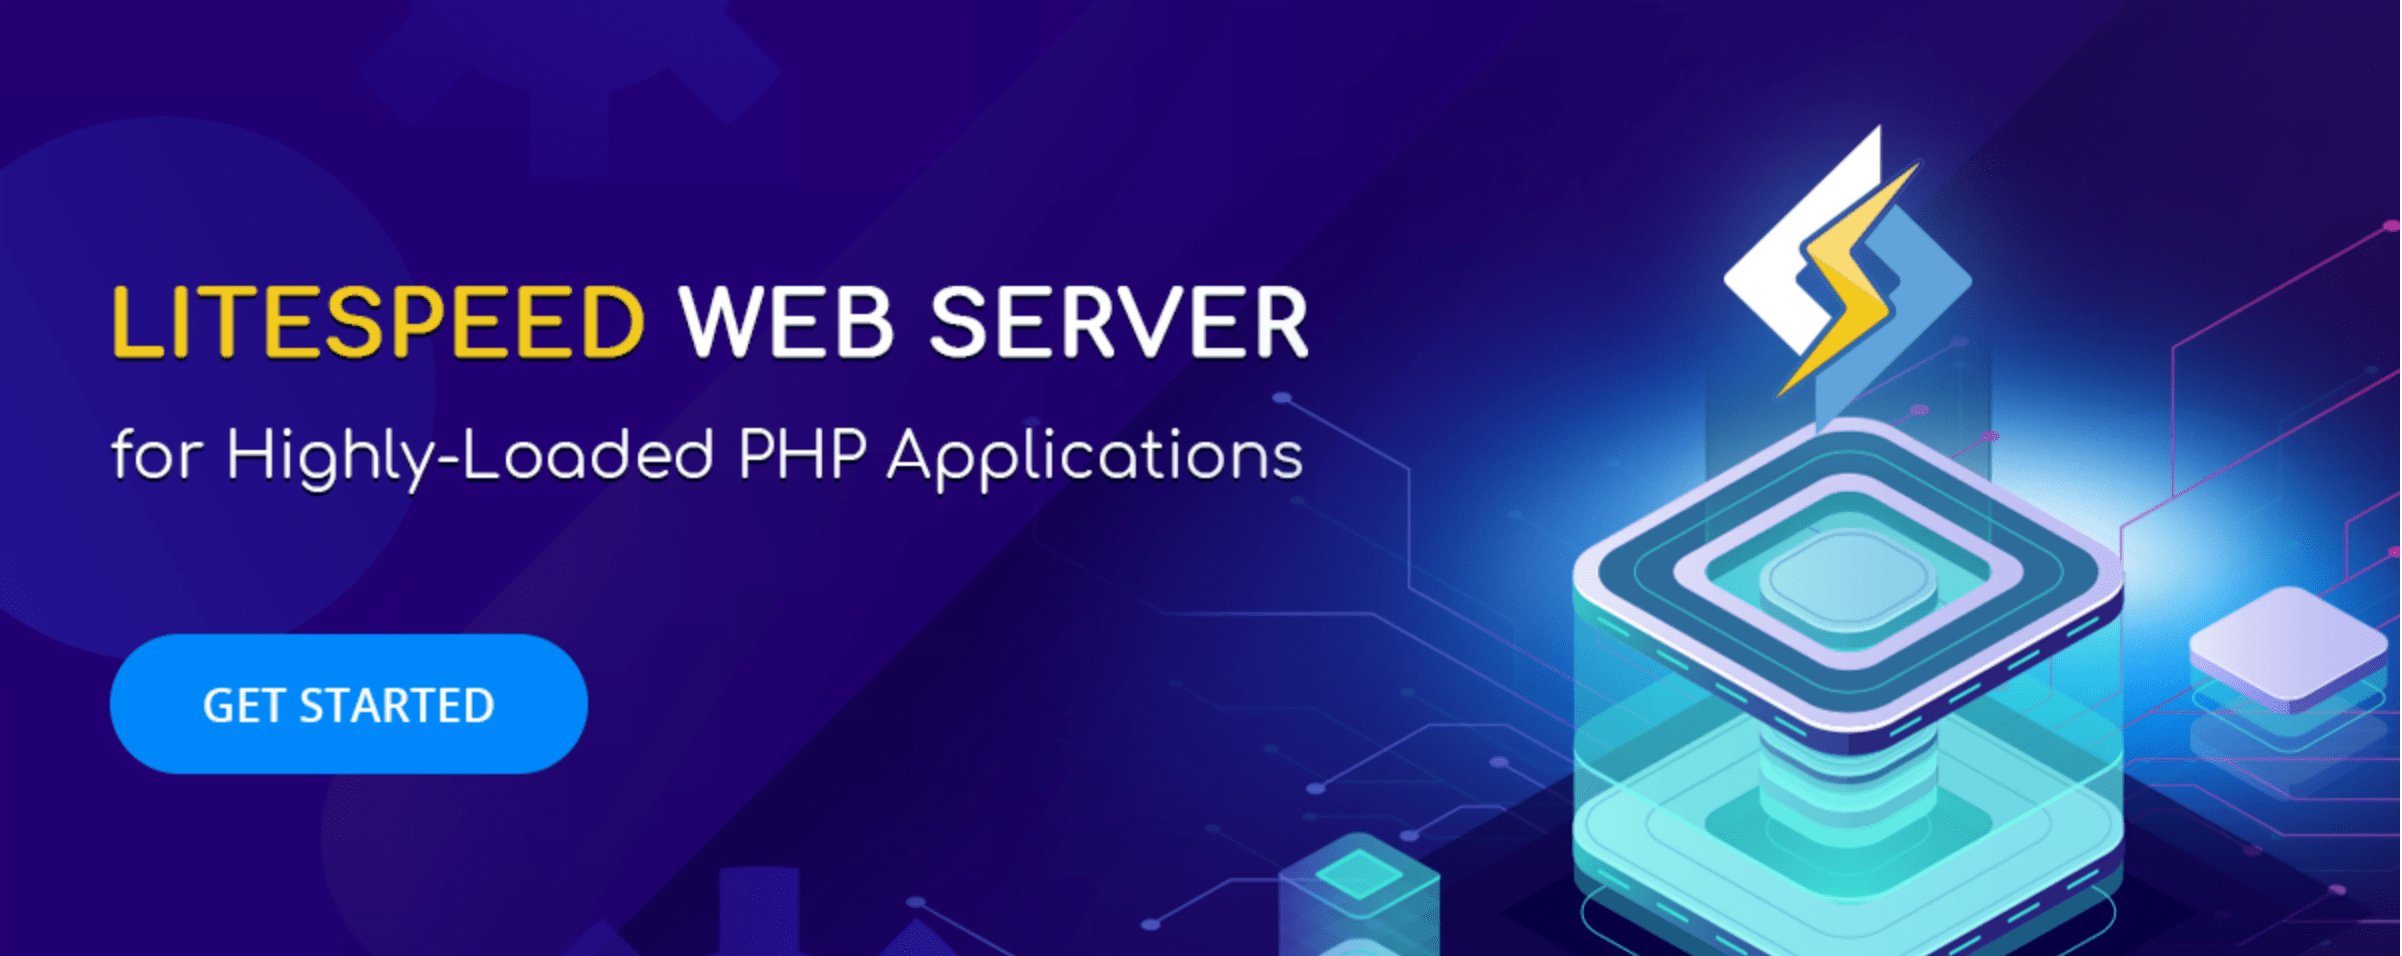 LiteSpeed - Best Web Servers for PHP Development – HostNamaste.com